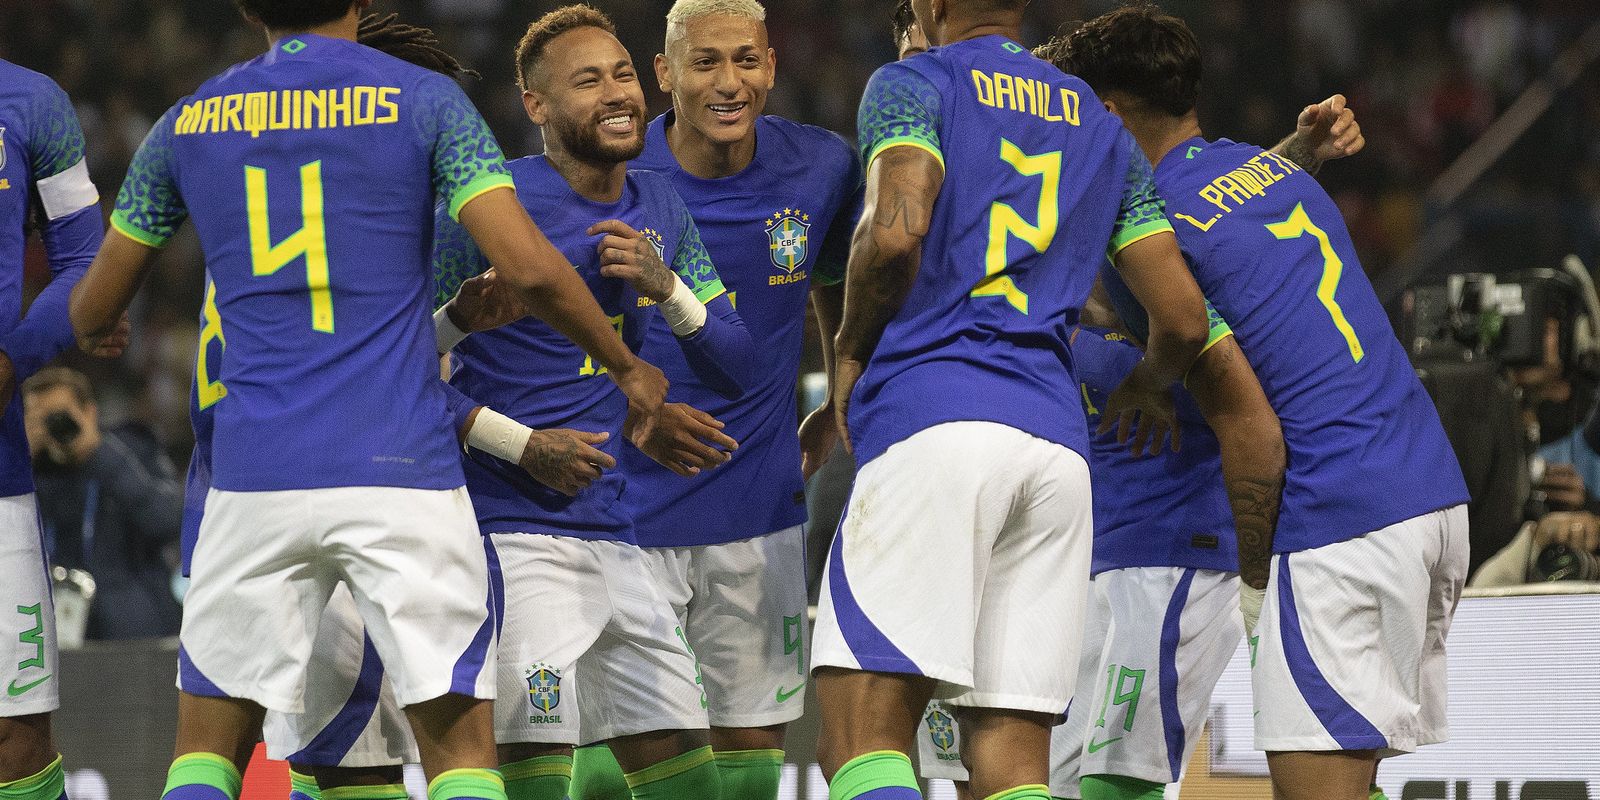 Confira os jogos e resultados dos últimos amistosos antes da Copa do Mundo  2022 - Copa do Mundo - Br - Futboo.com